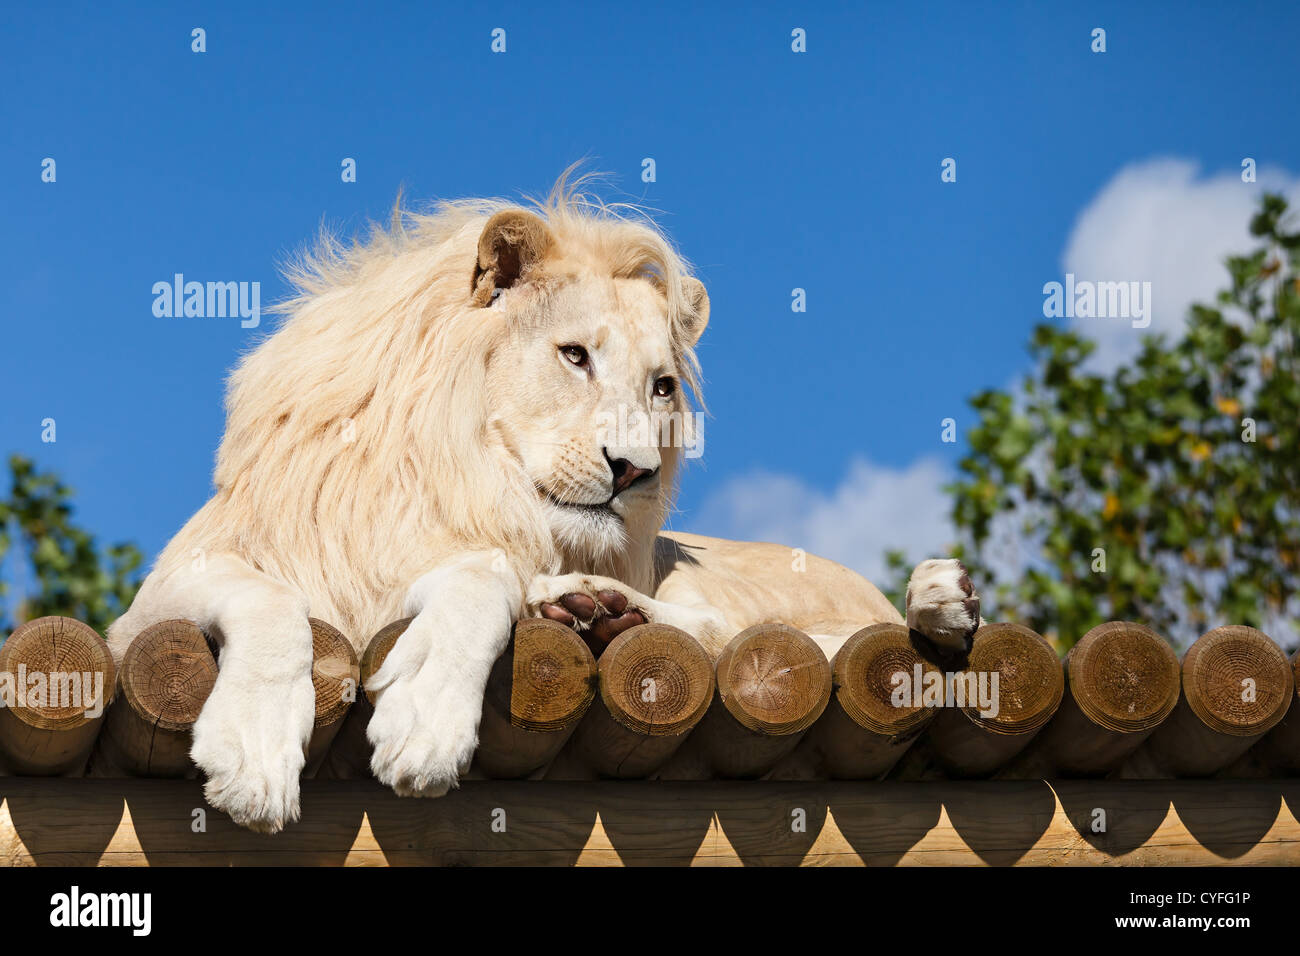 White Lion sur plate-forme en bois au soleil Panthera leo Banque D'Images